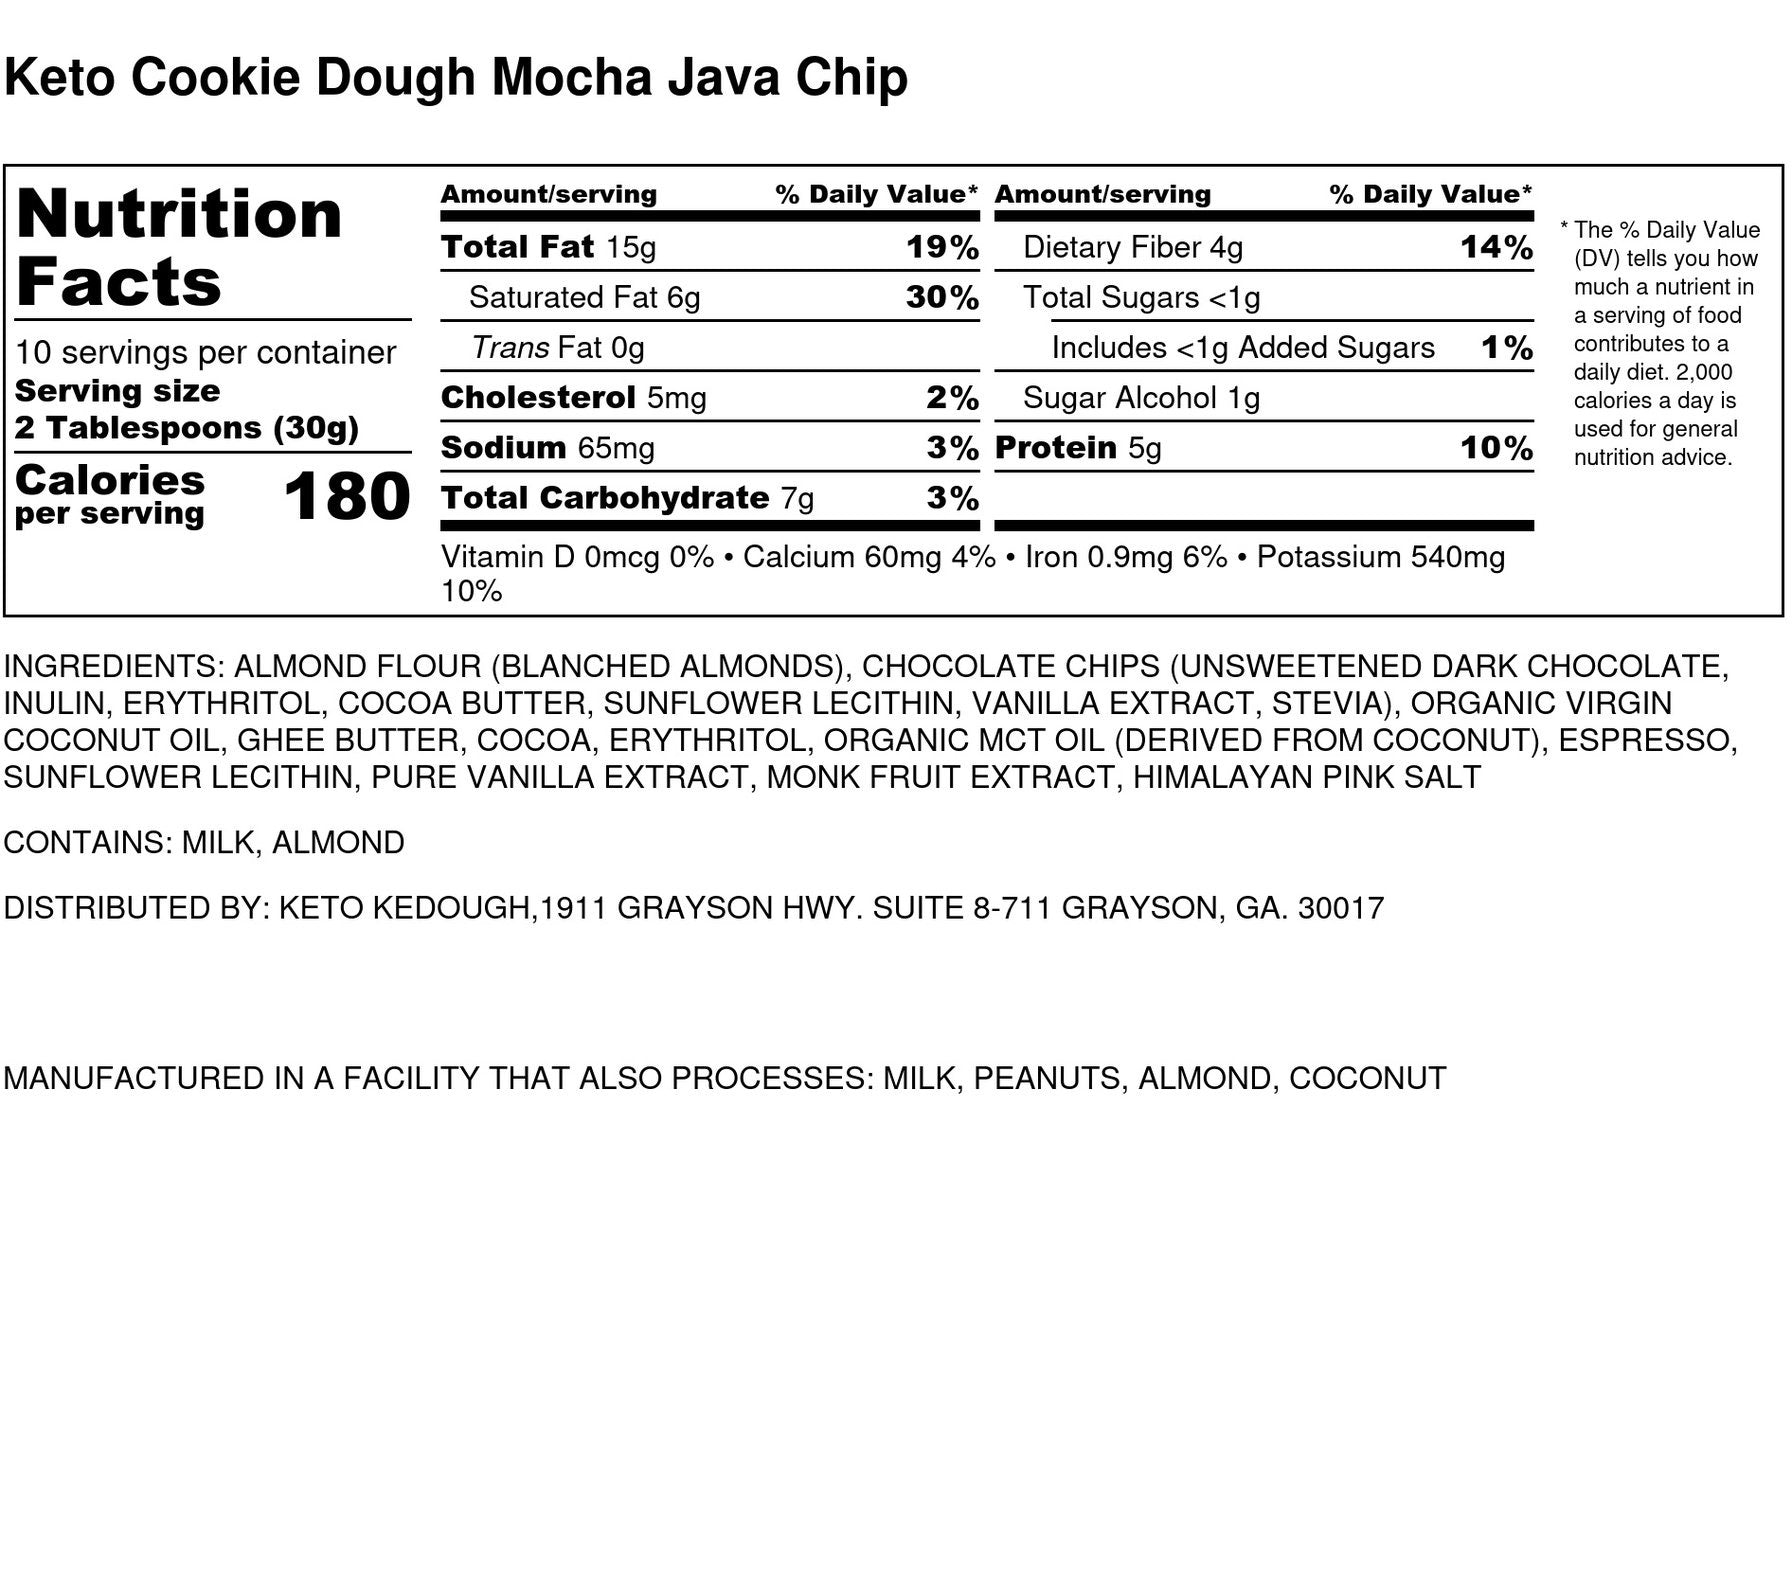 Keto Mocha Java Chip | Edible Cookie Dough | Keto Kedough